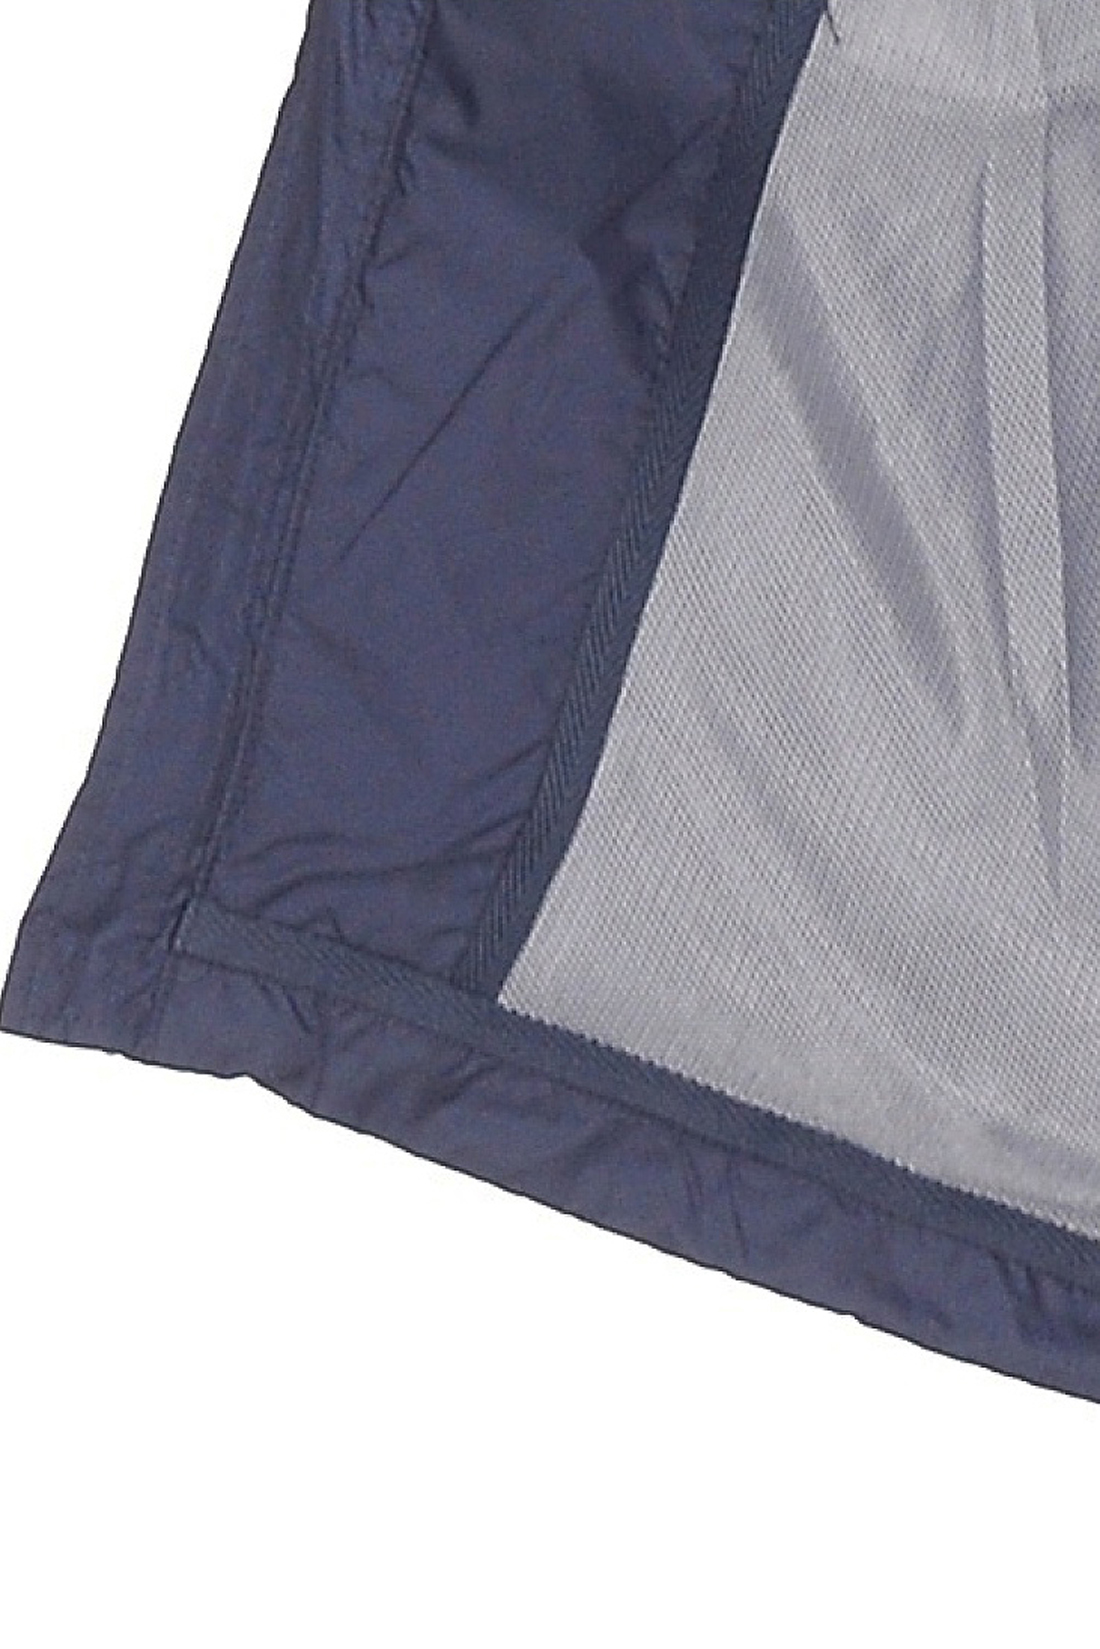 Ветровка в спортивном стиле (арт. baon B608015), размер 4XL, цвет синий Ветровка в спортивном стиле (арт. baon B608015) - фото 4